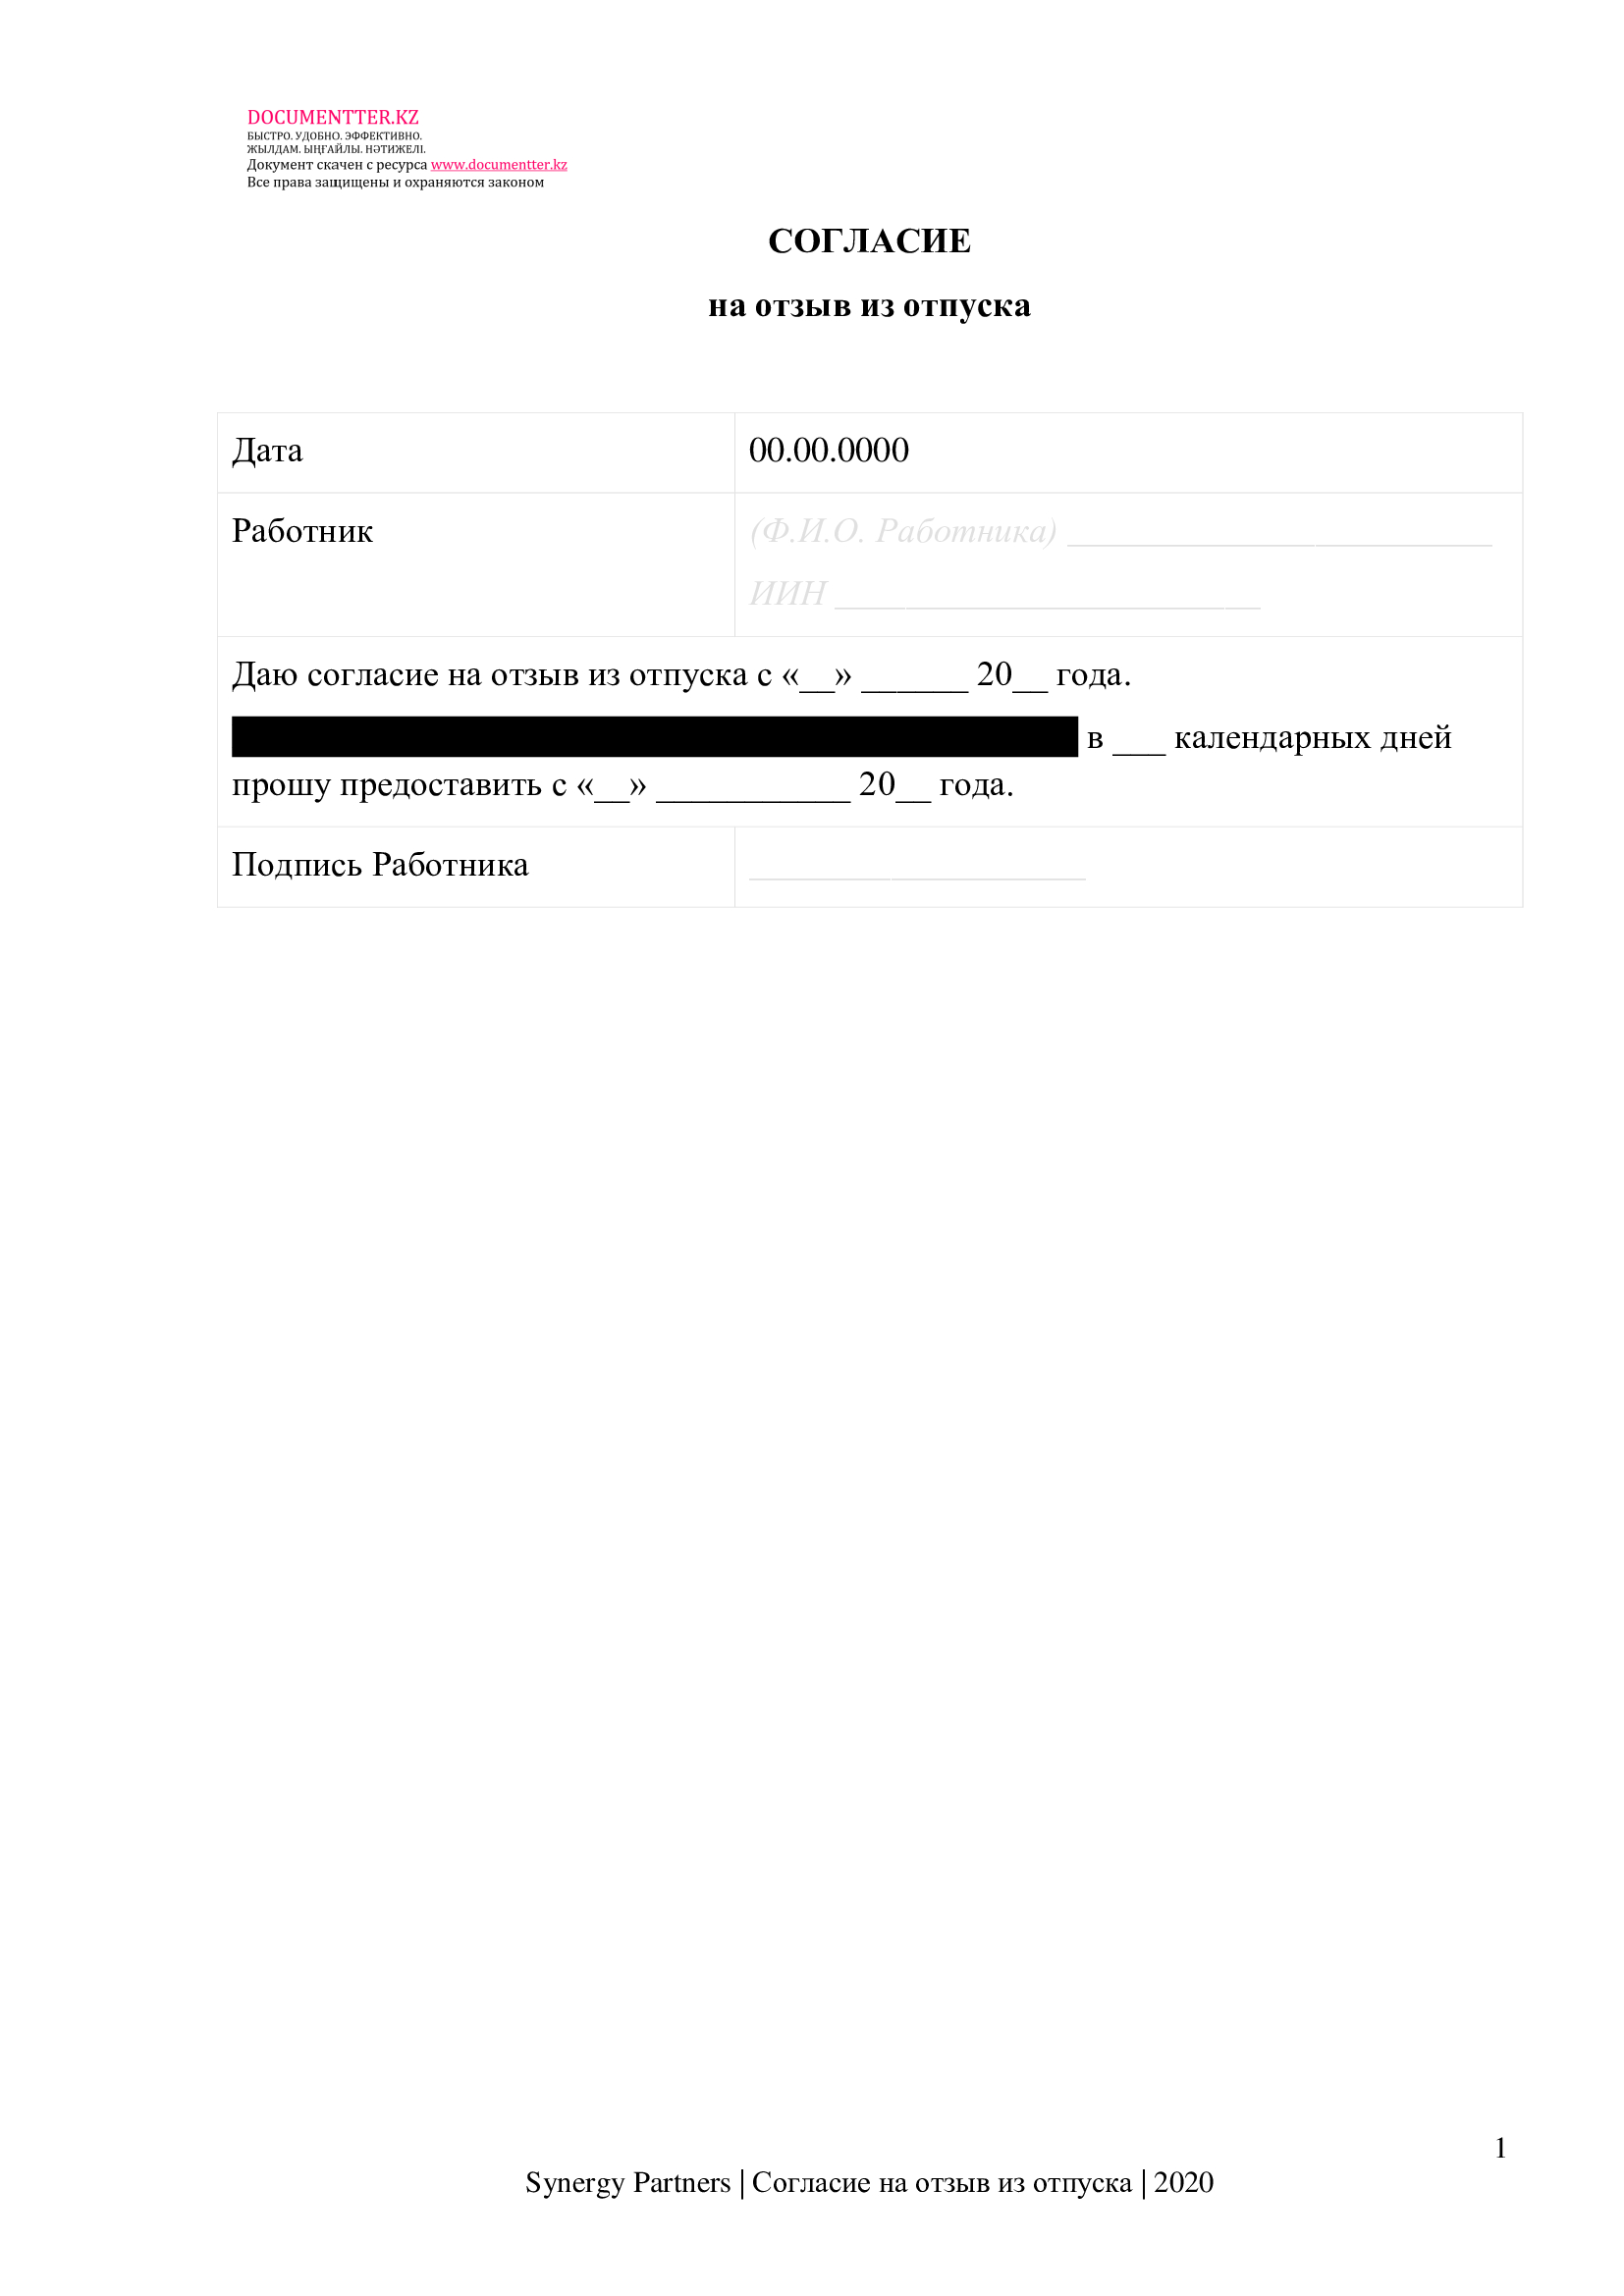 Согласие работника на отзыв из отпуска | documentterkz.com в Казахстане